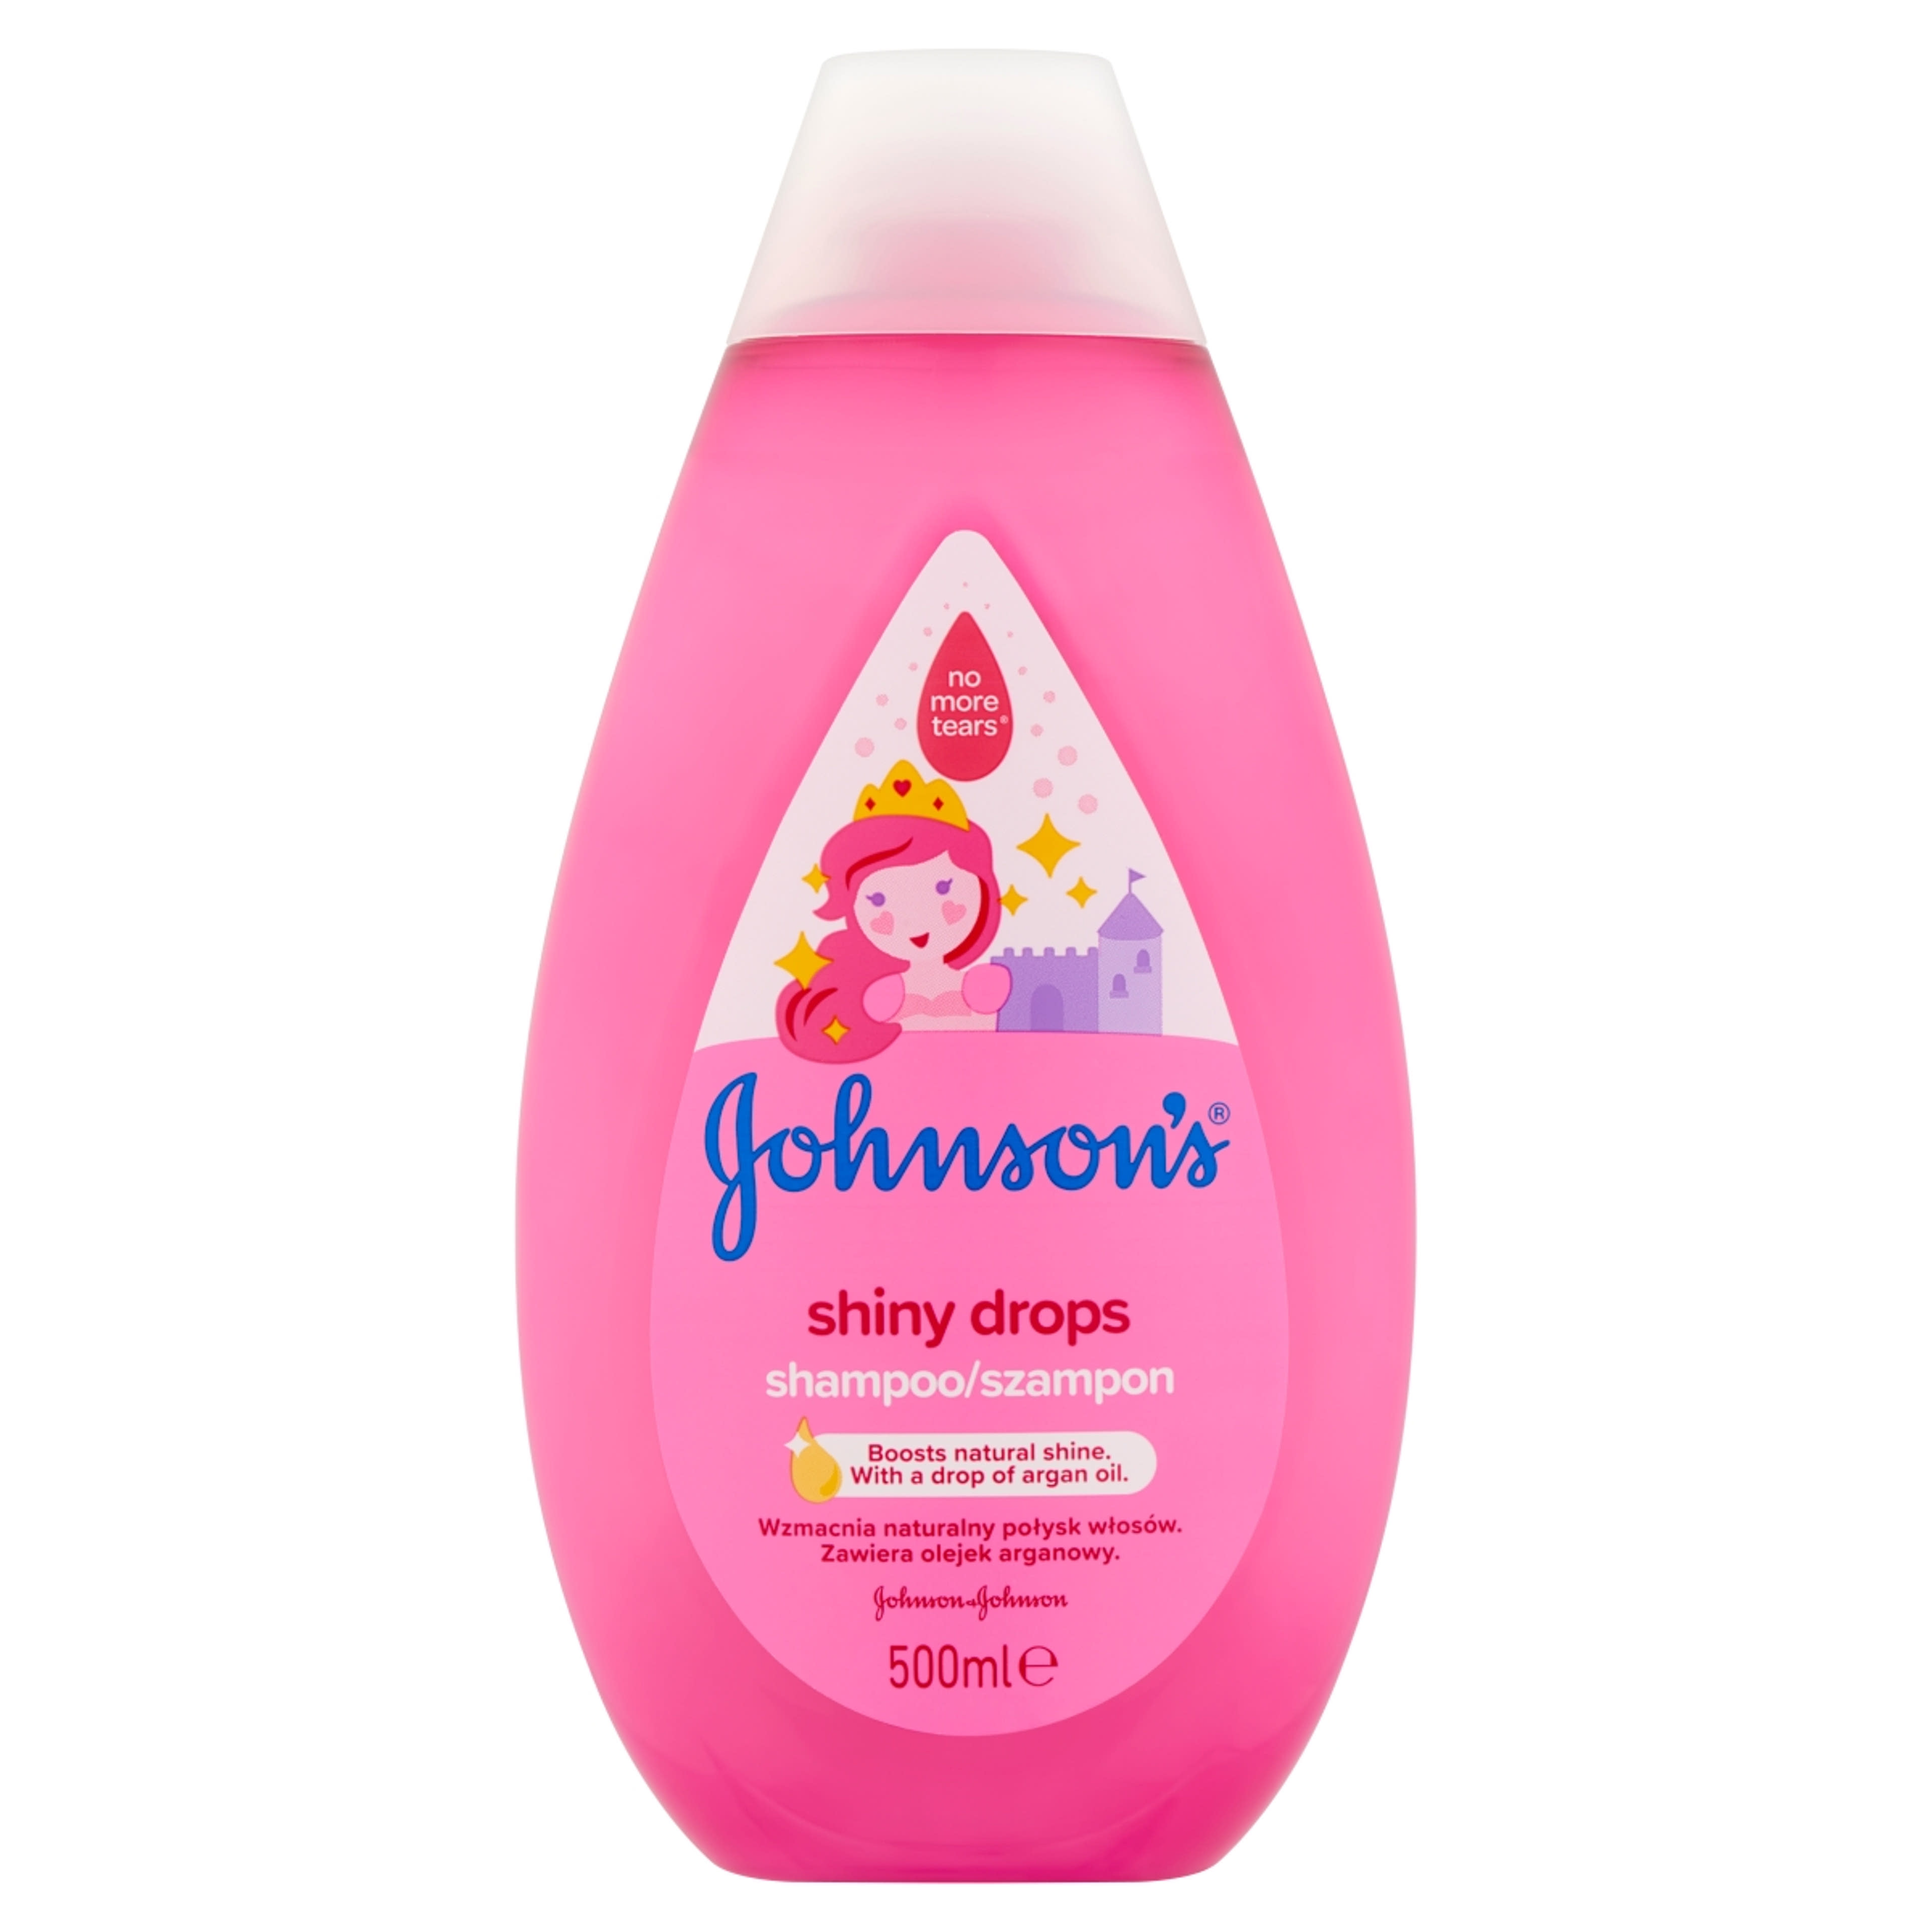 Johnson's Shiny Drops Sampon  - 500 ml